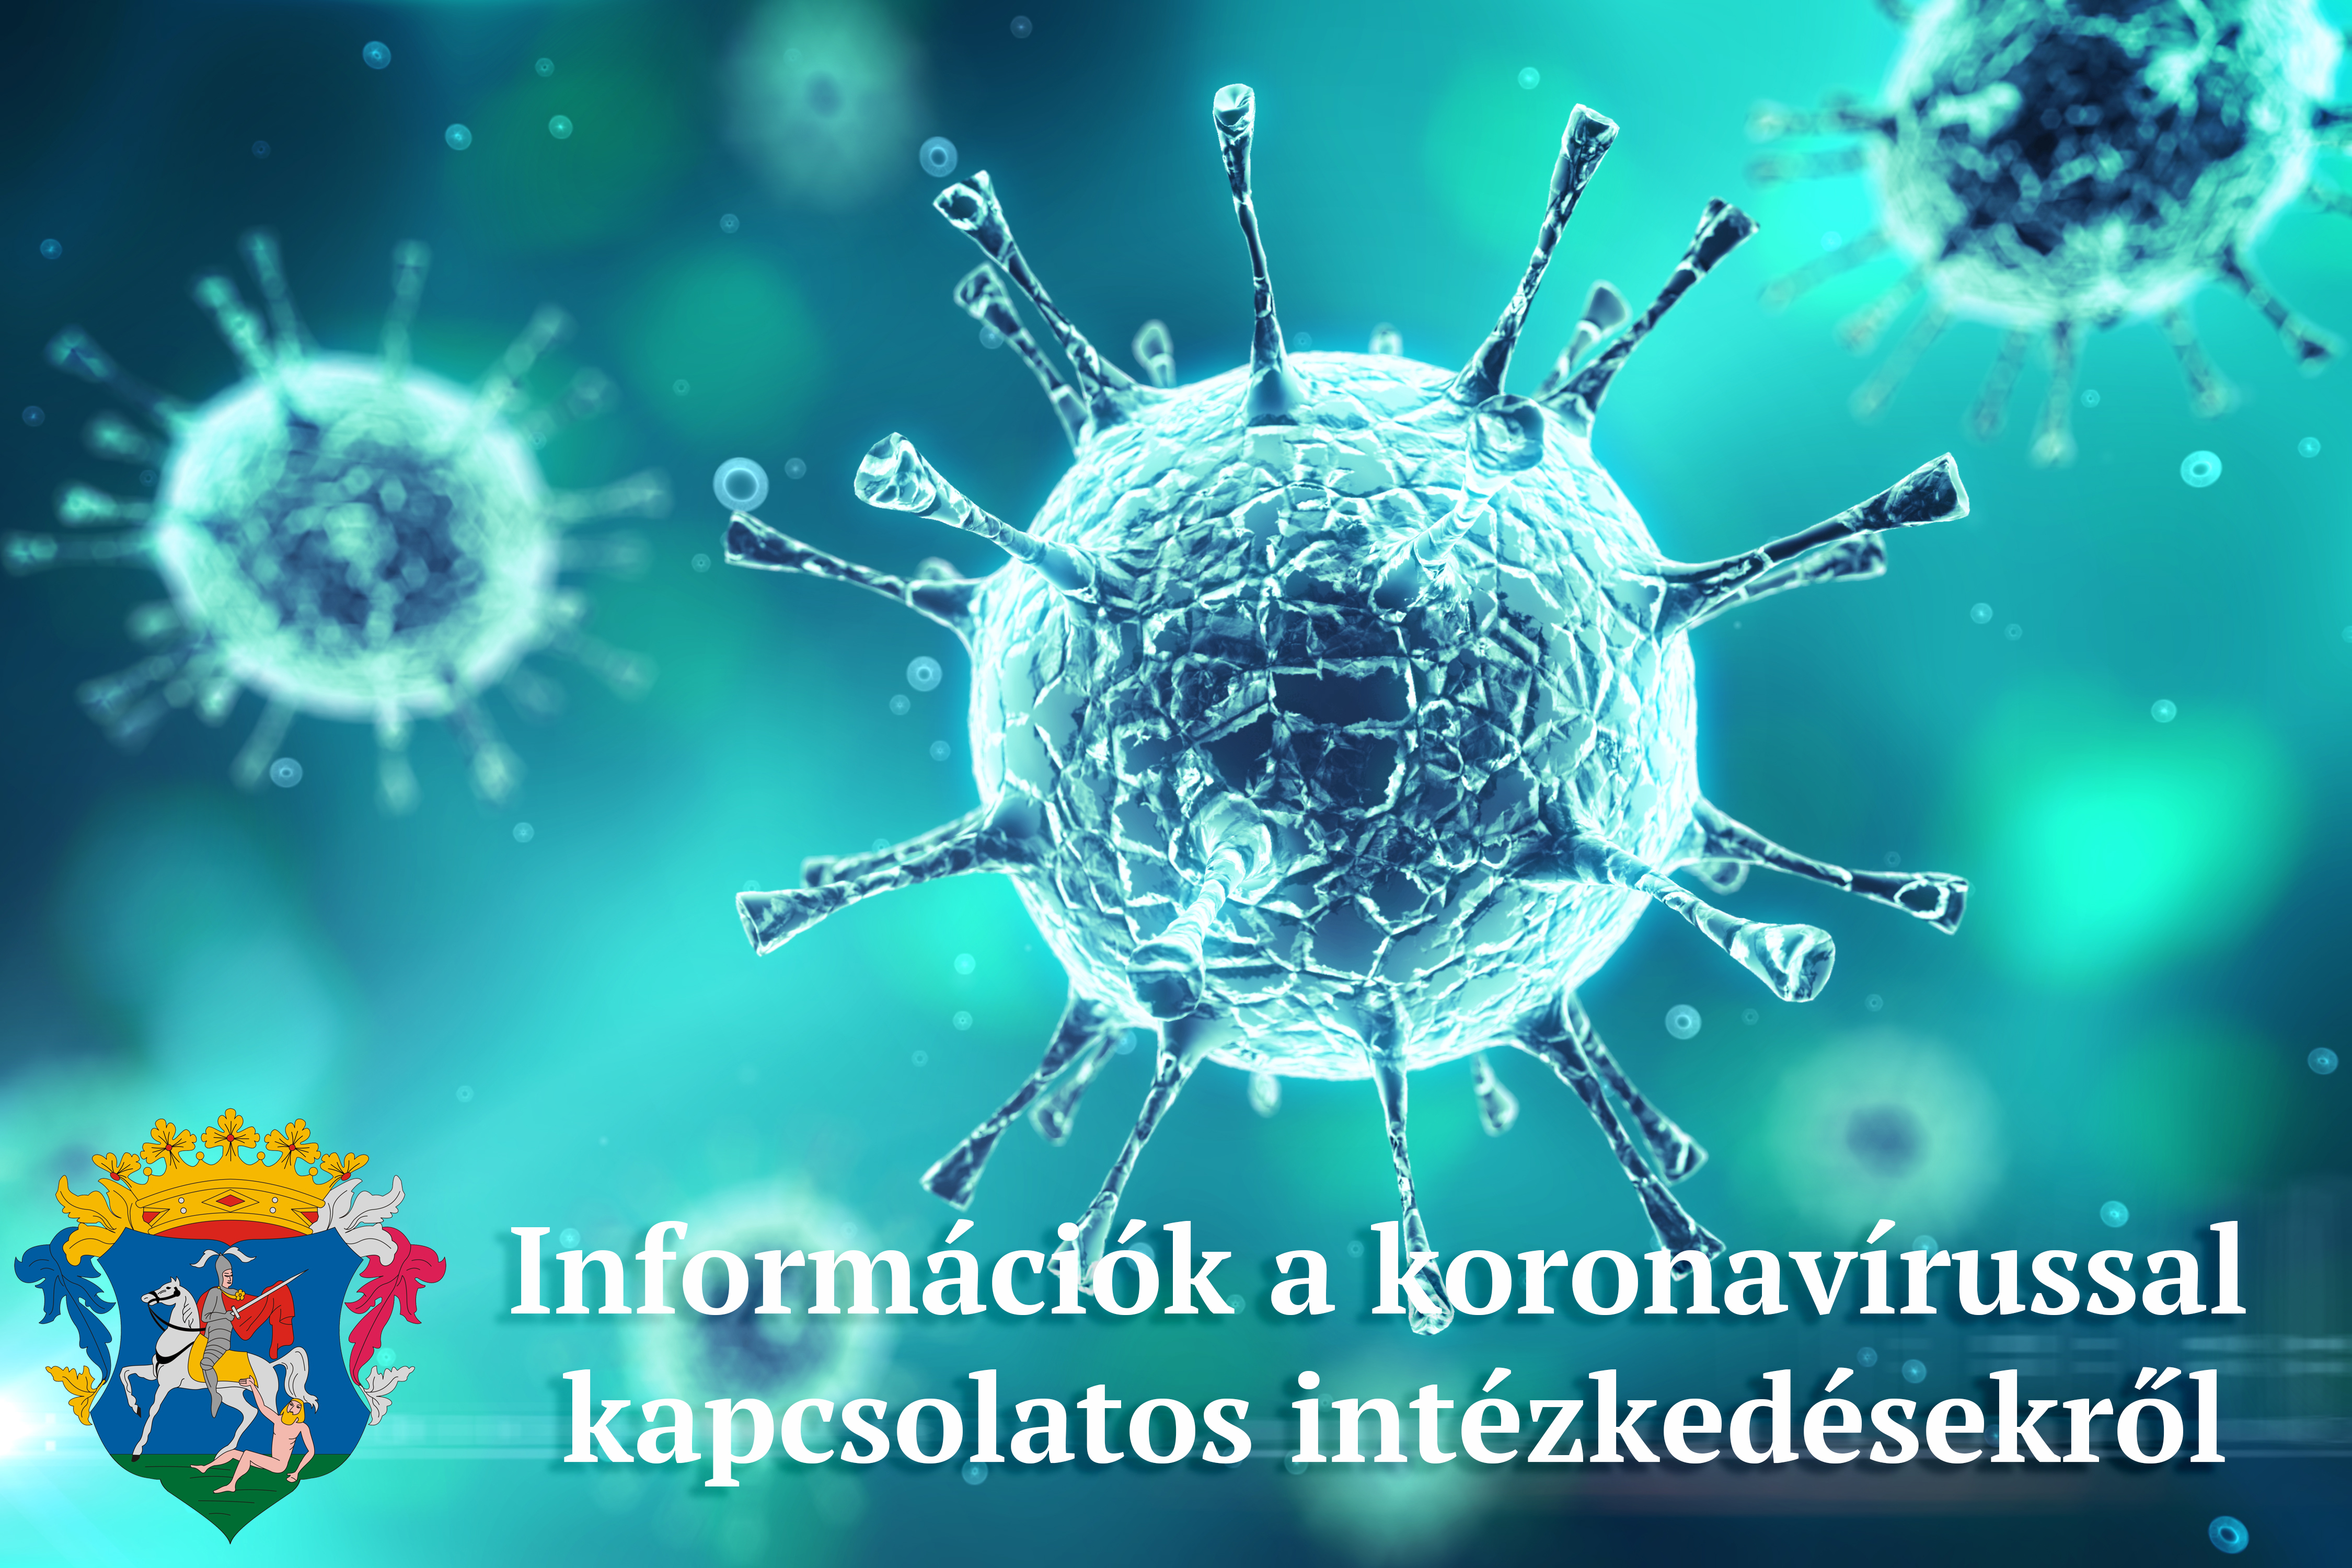 információk a koronavírussal kapcsolatos intézkedésekről, döntésekről 2021. január 20-29 között